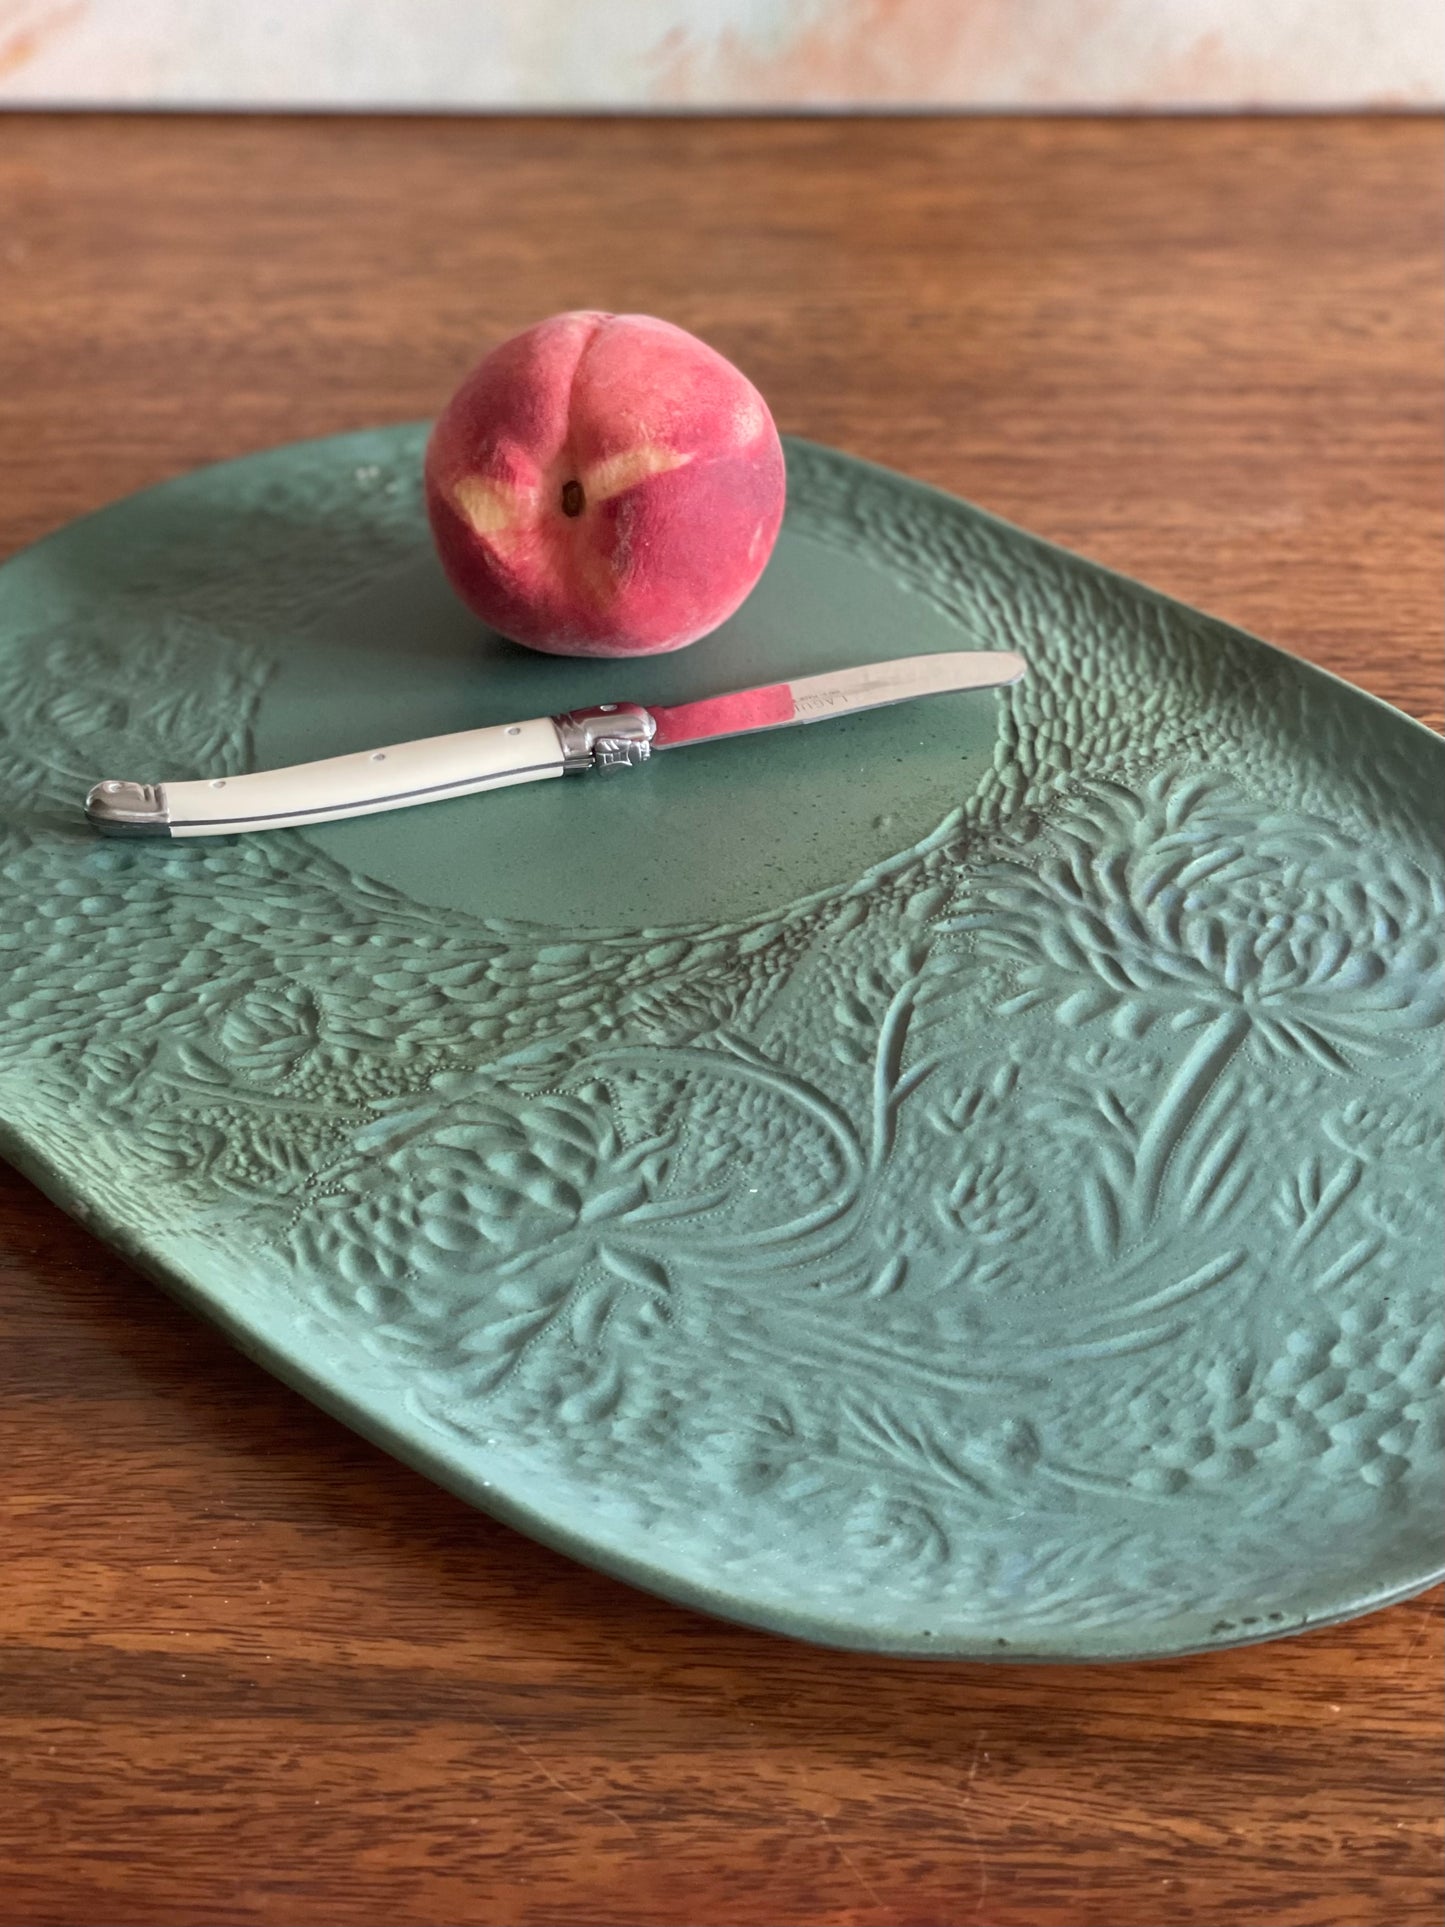 Large carved green oval platter